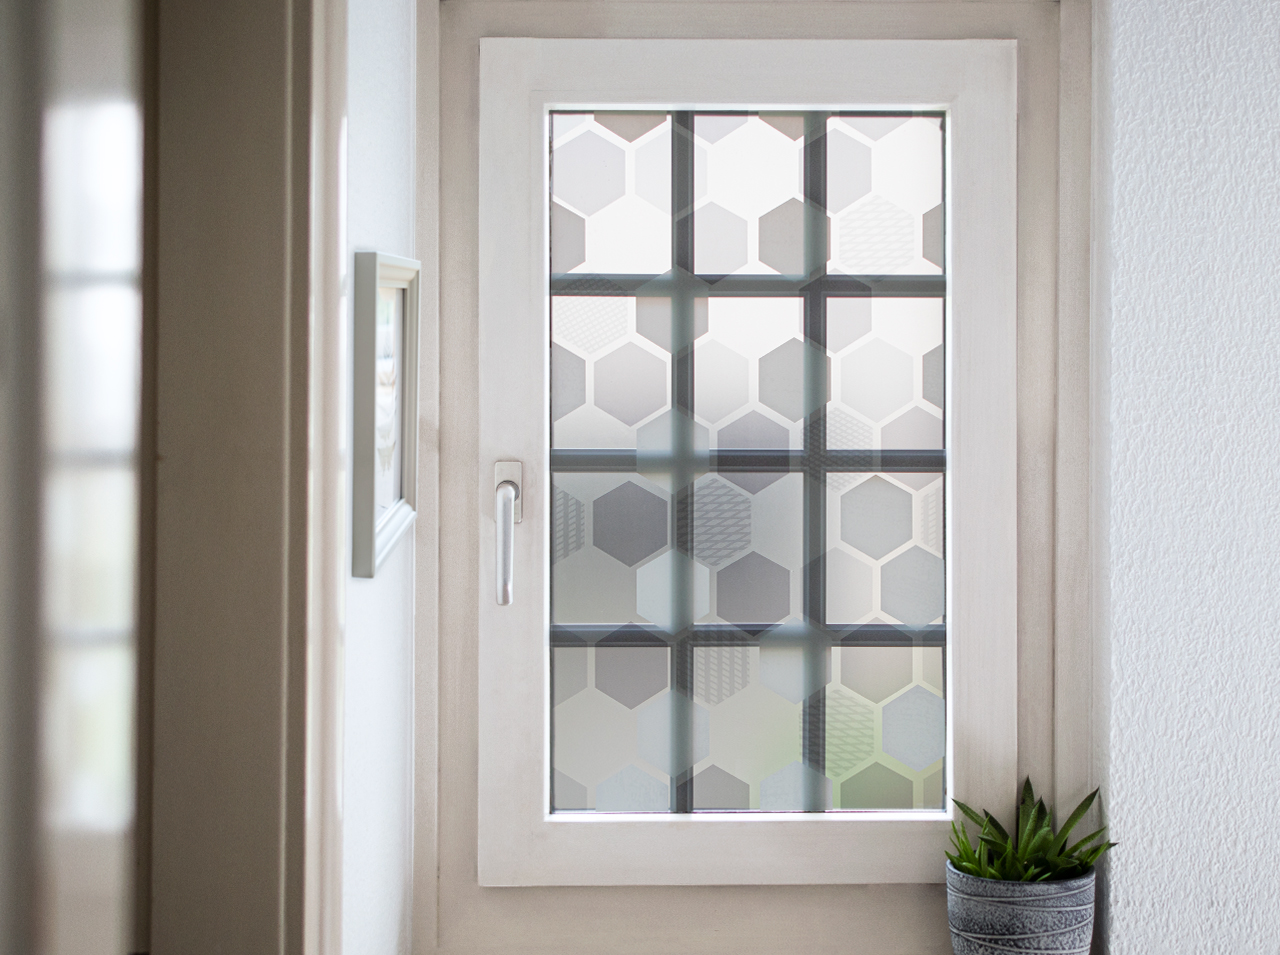 Окно оклеено непрозрачной оконной пленкой с узором-сотами в белом, сером и мятном цветах.